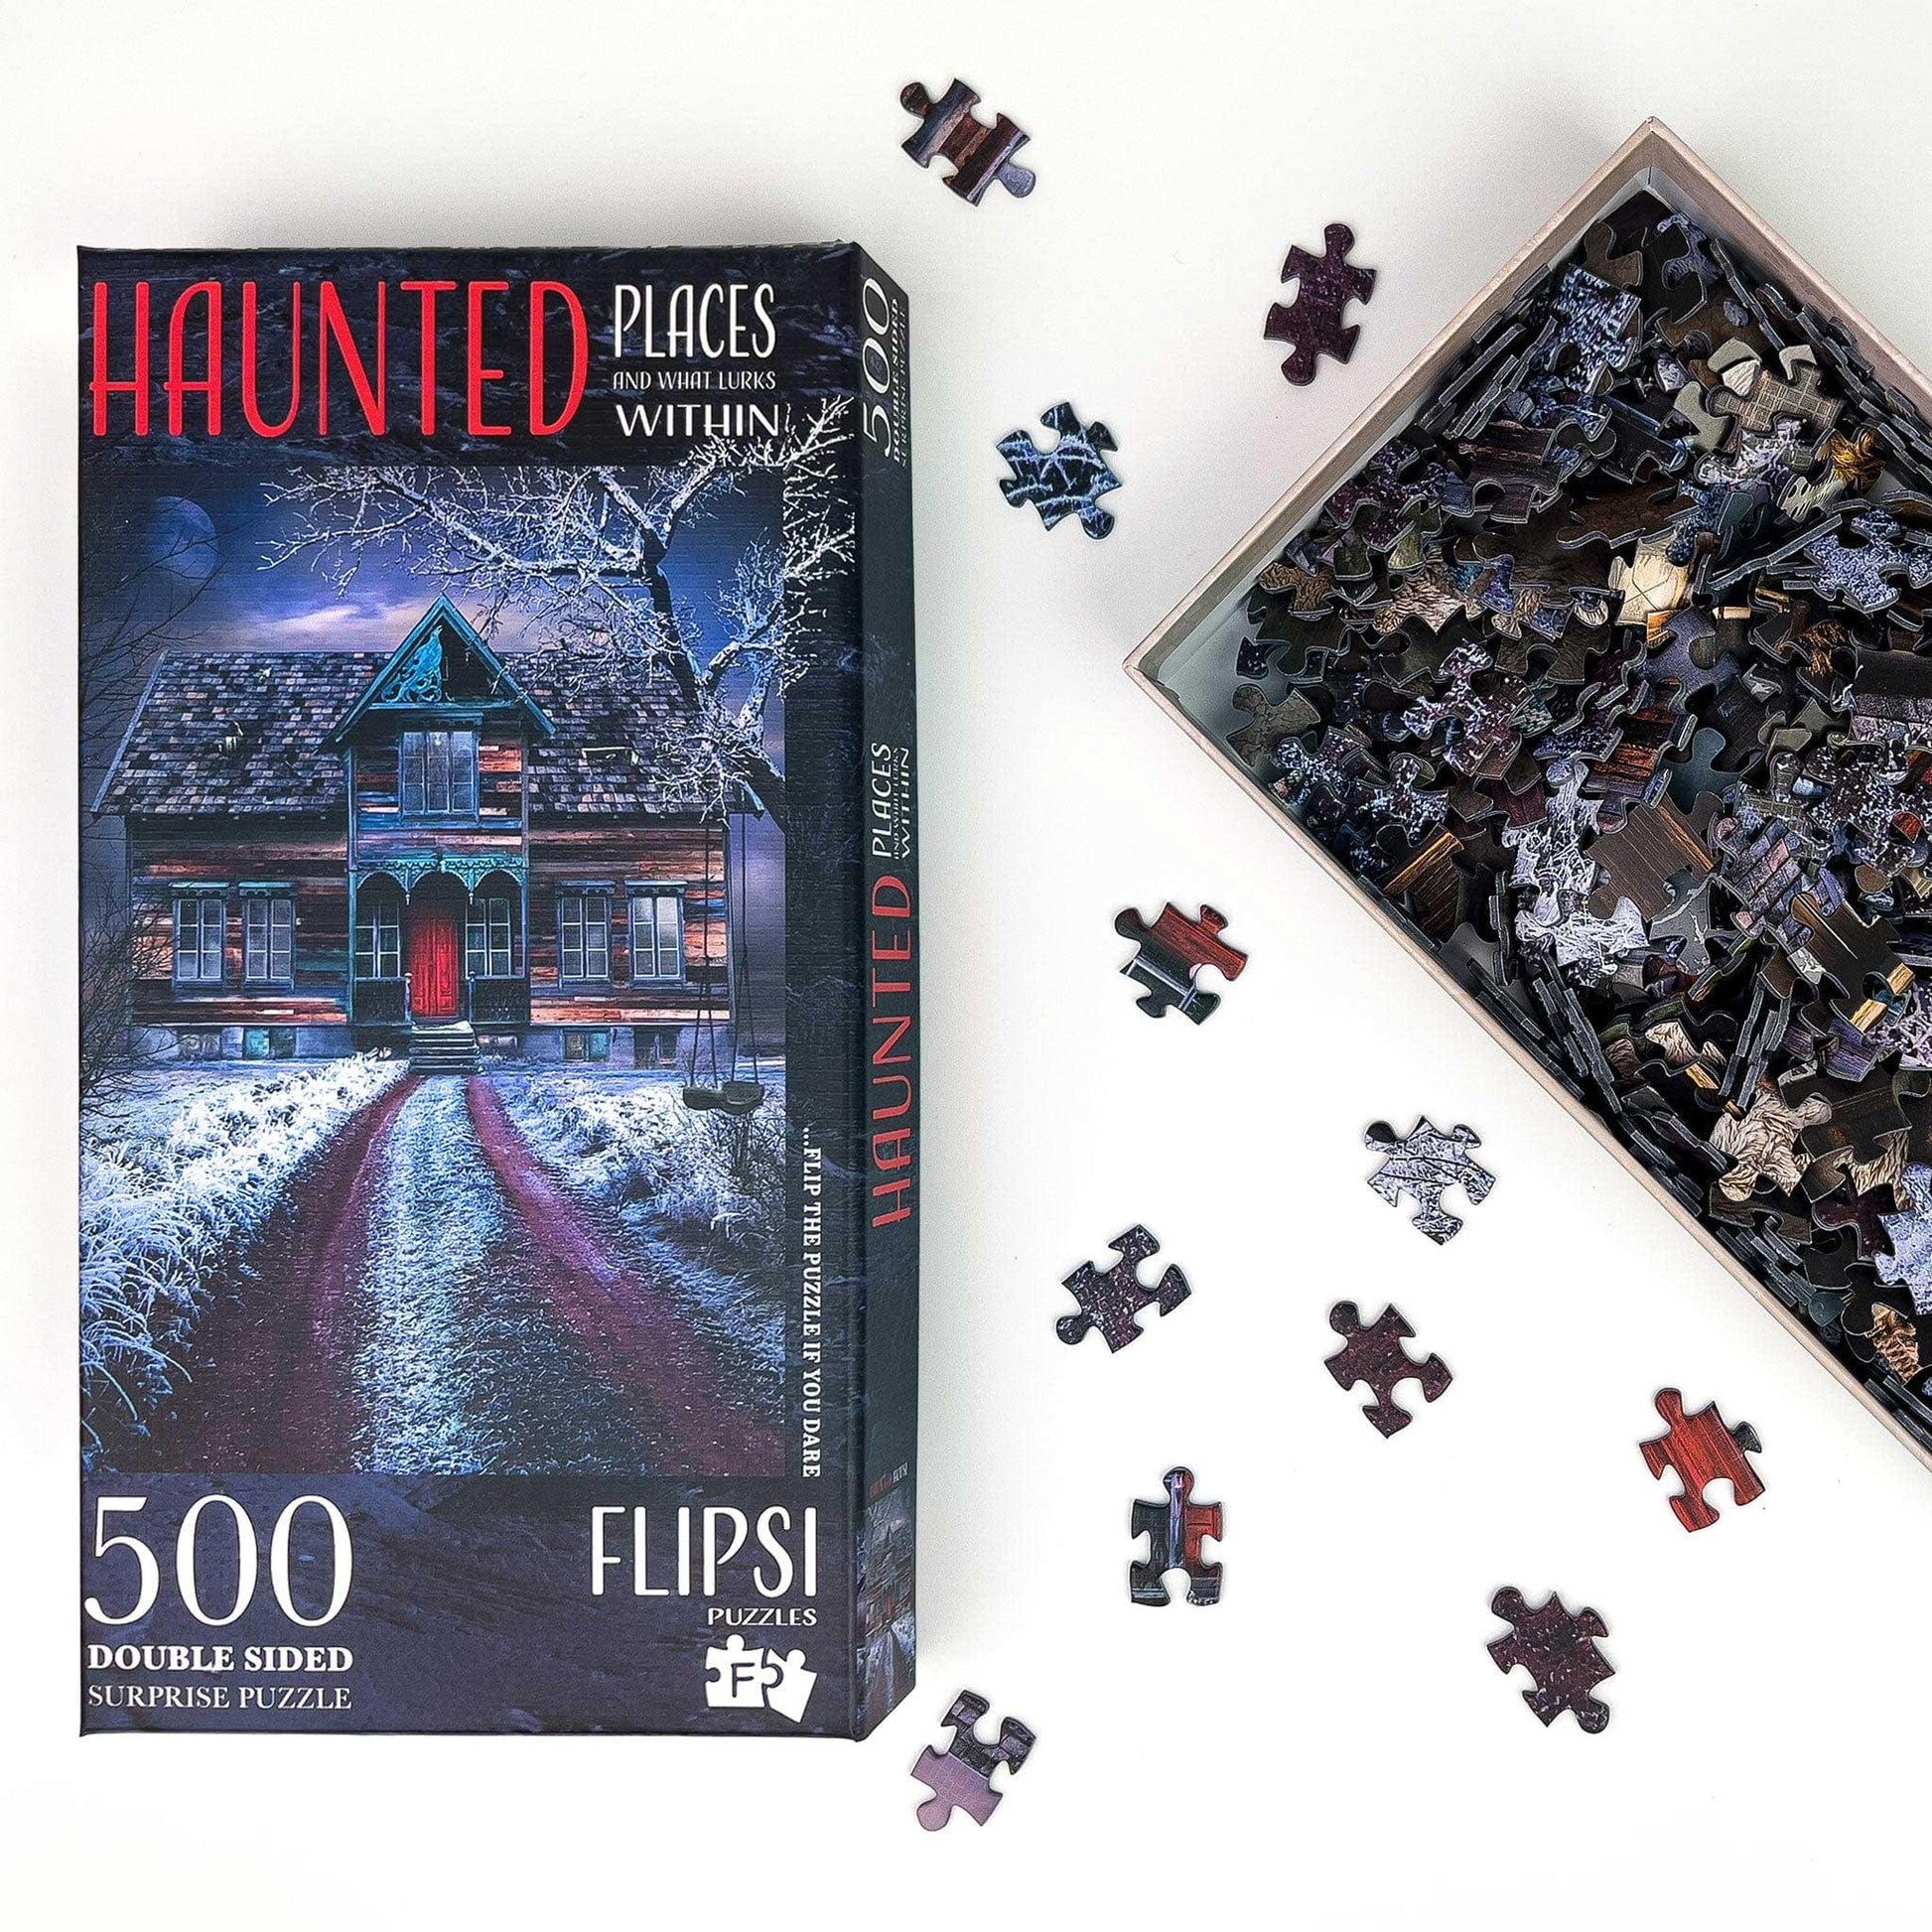 FLIPSI PUZZLE: Haunted House - Flipsi Puzzles